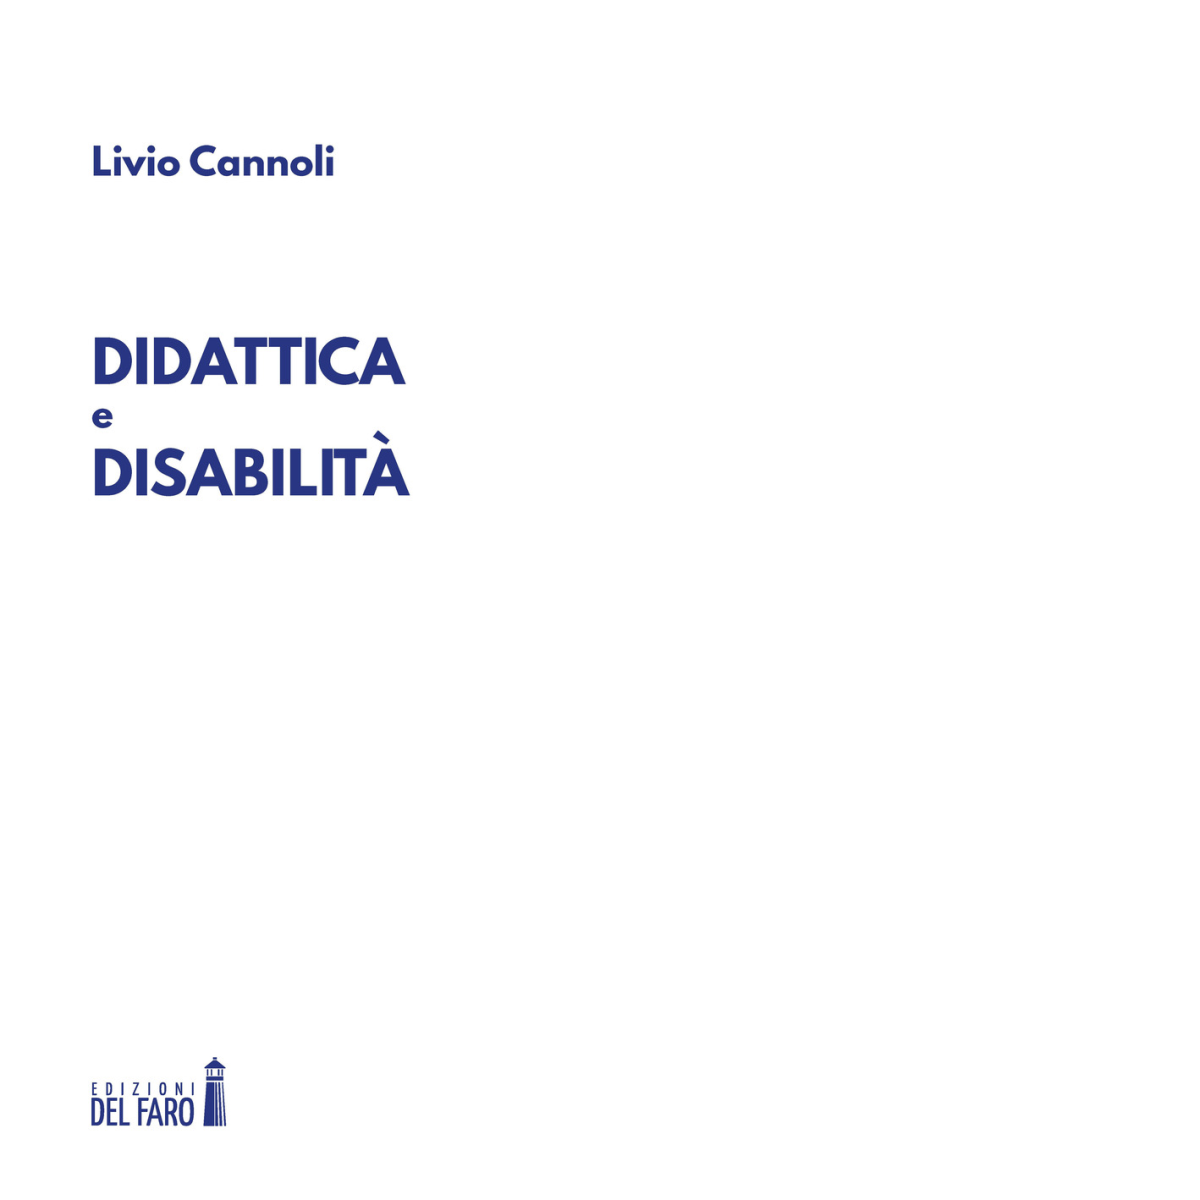 Didattica e disabilit? di Livio Cannoli - Edizioni Del faro, 2018 libro usato